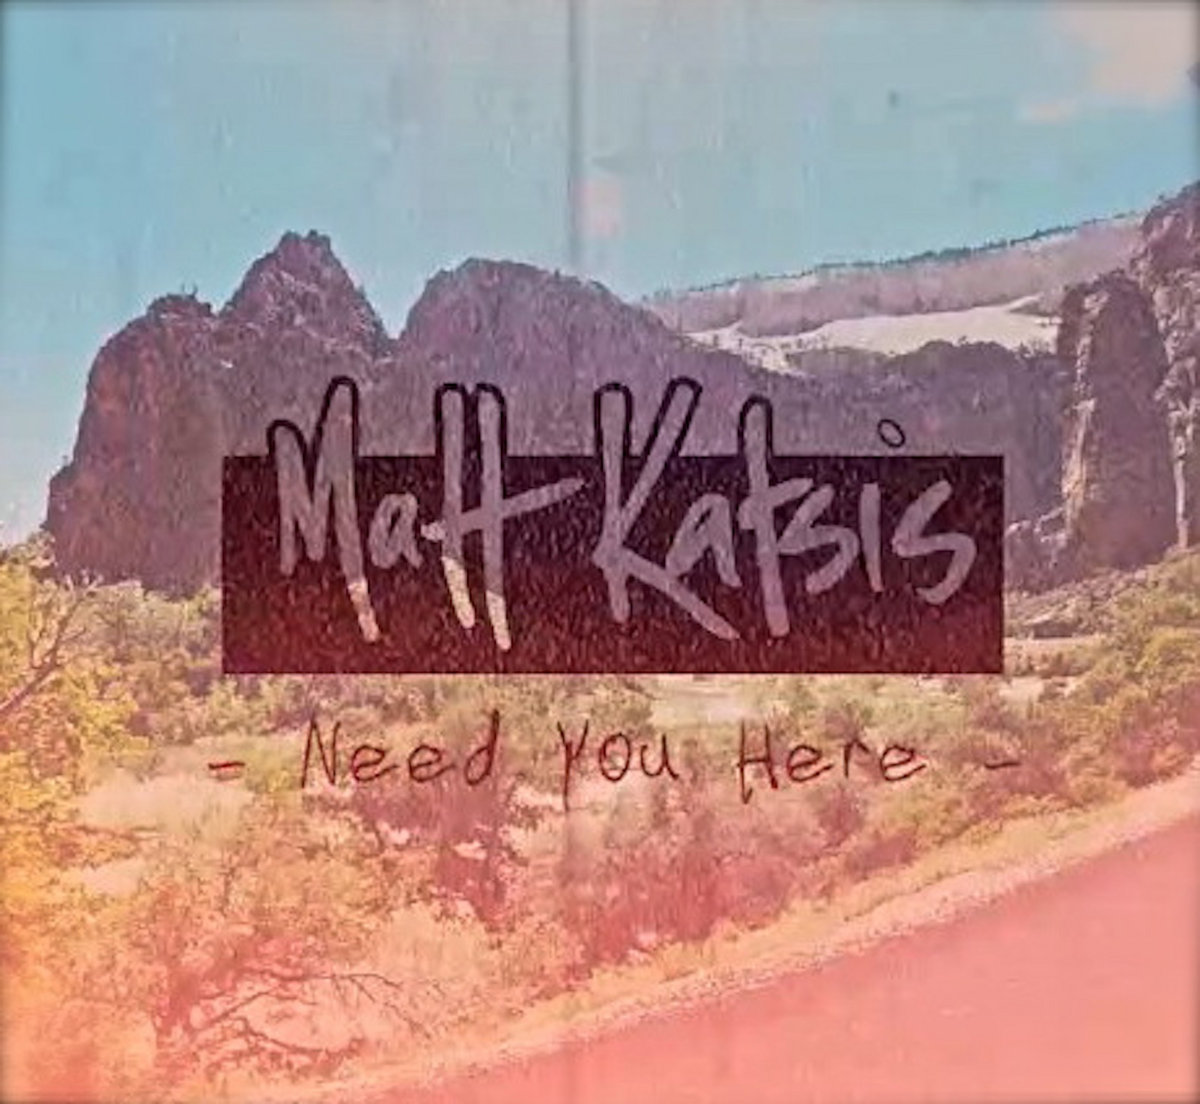 Matt Katsis: Need You Here